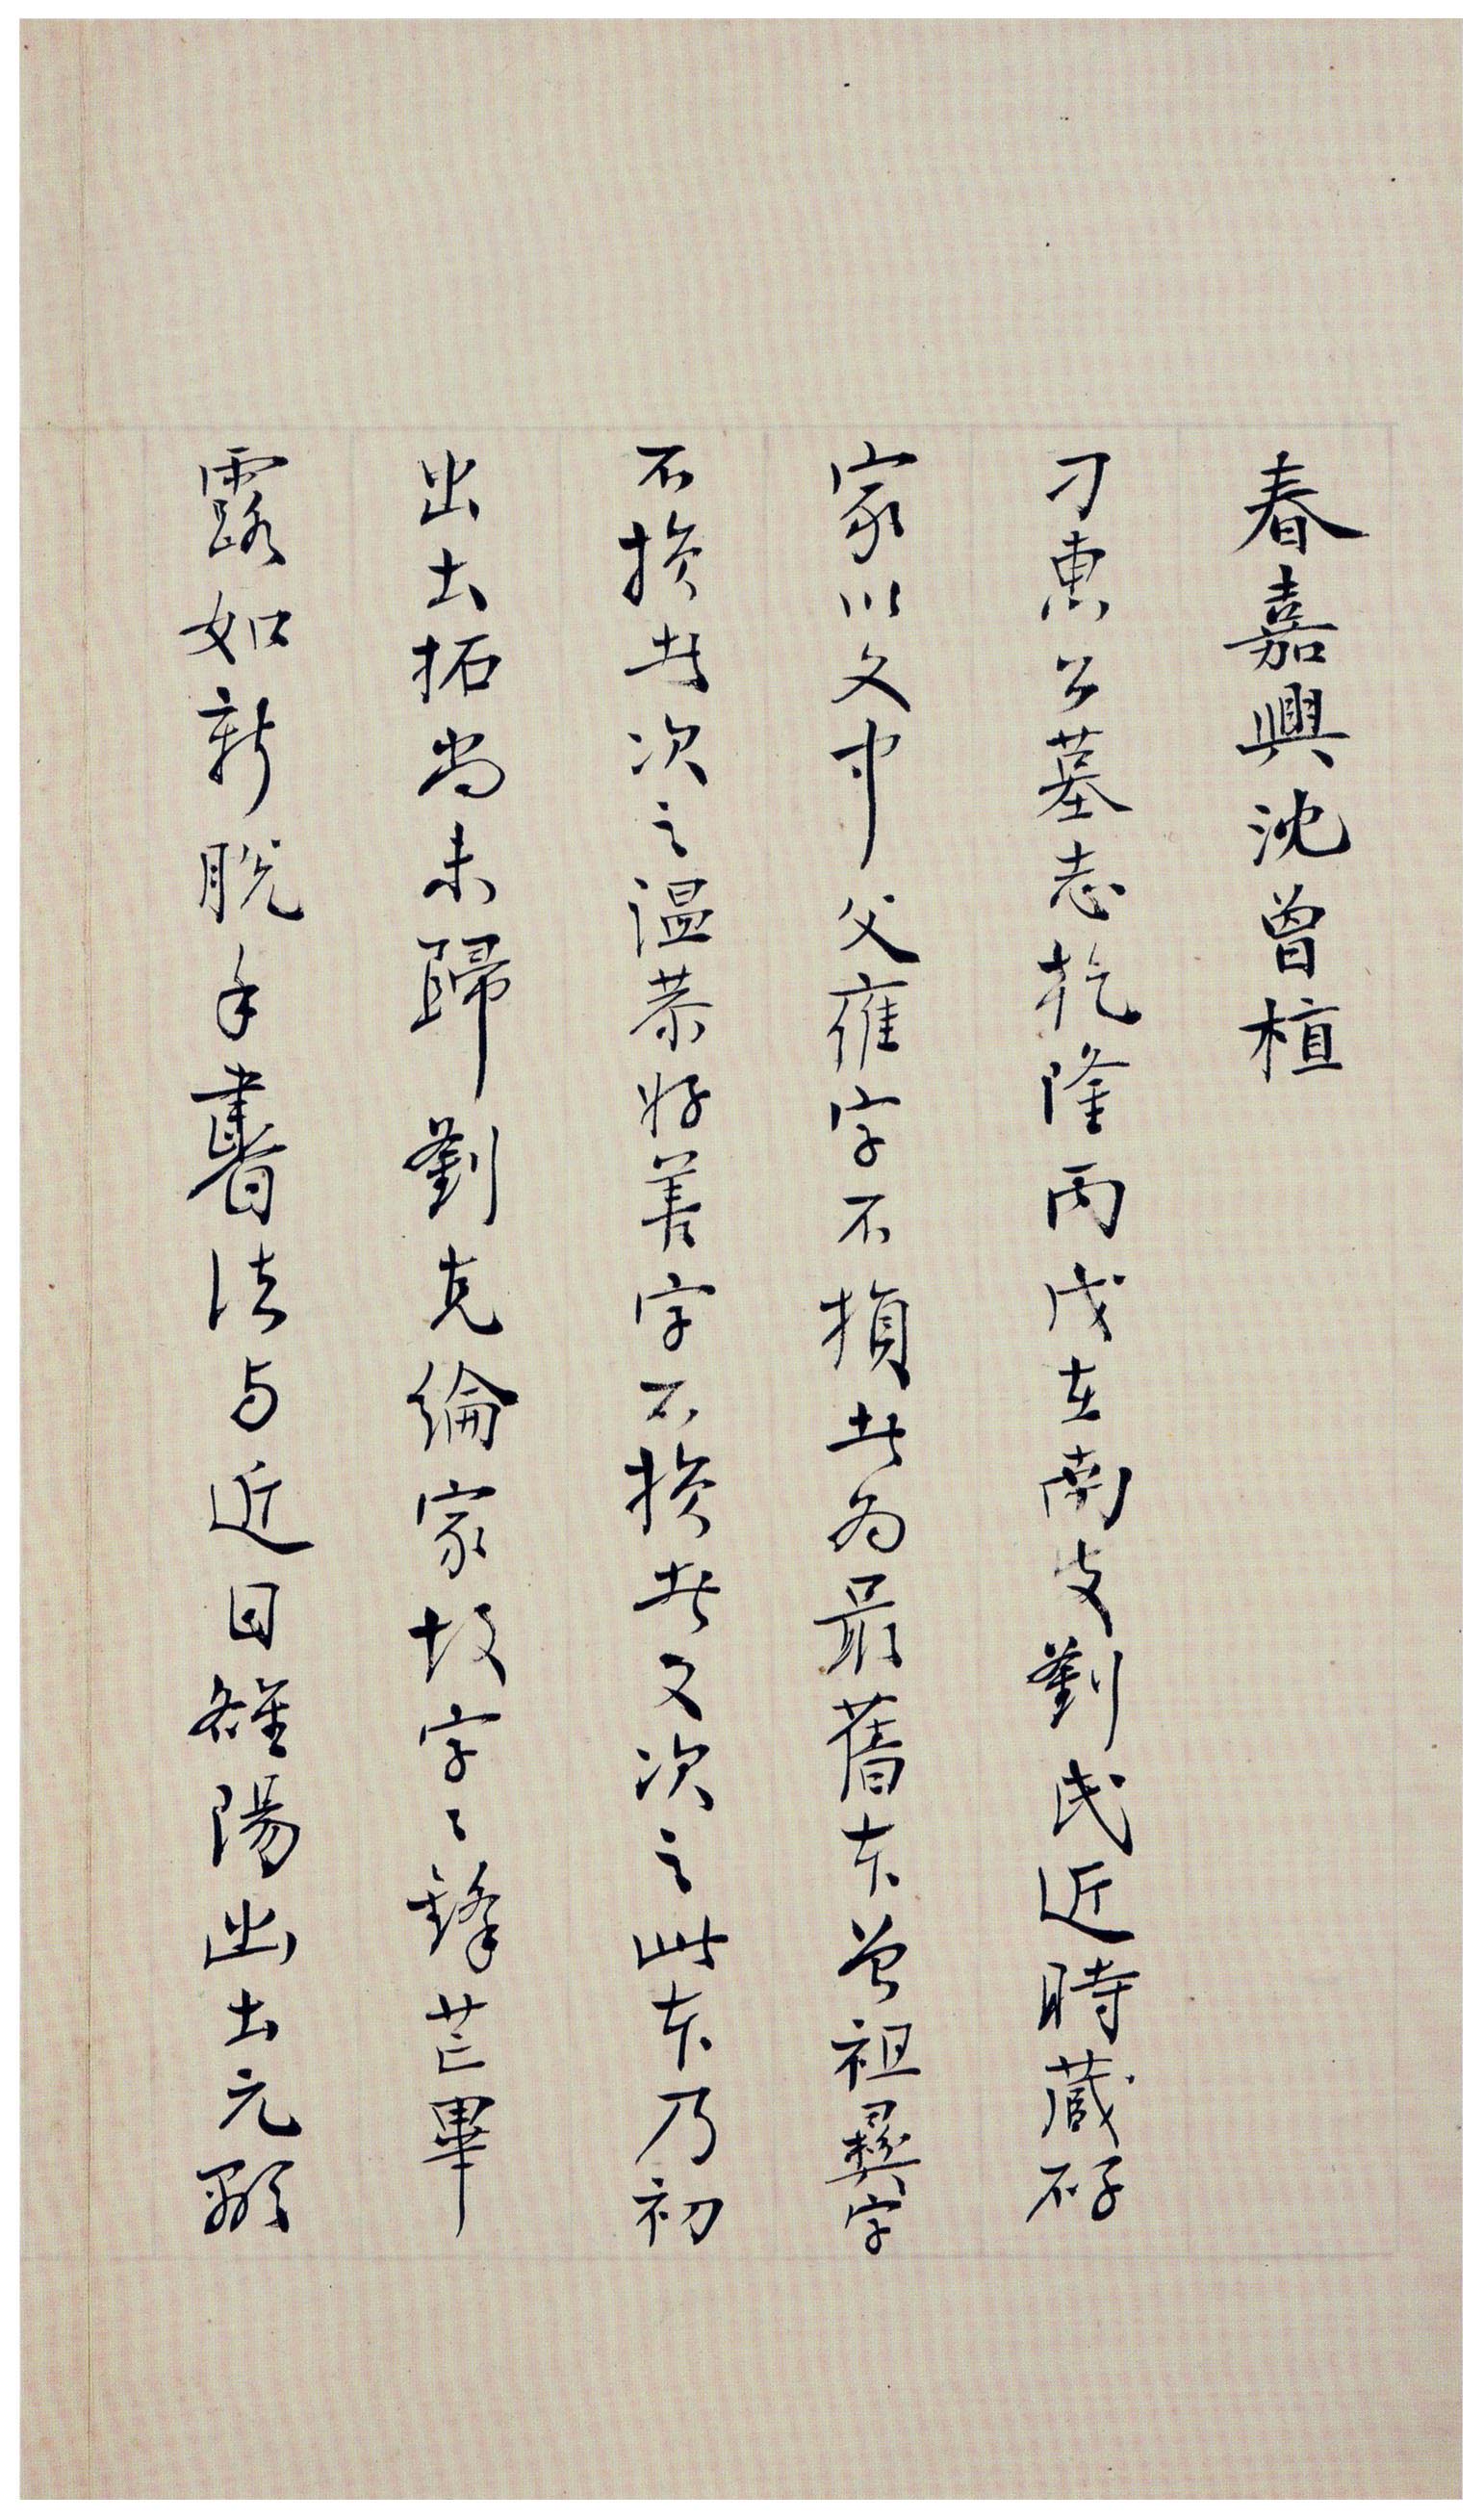 北魏《刁遵墓志》题签与题跋(图20)